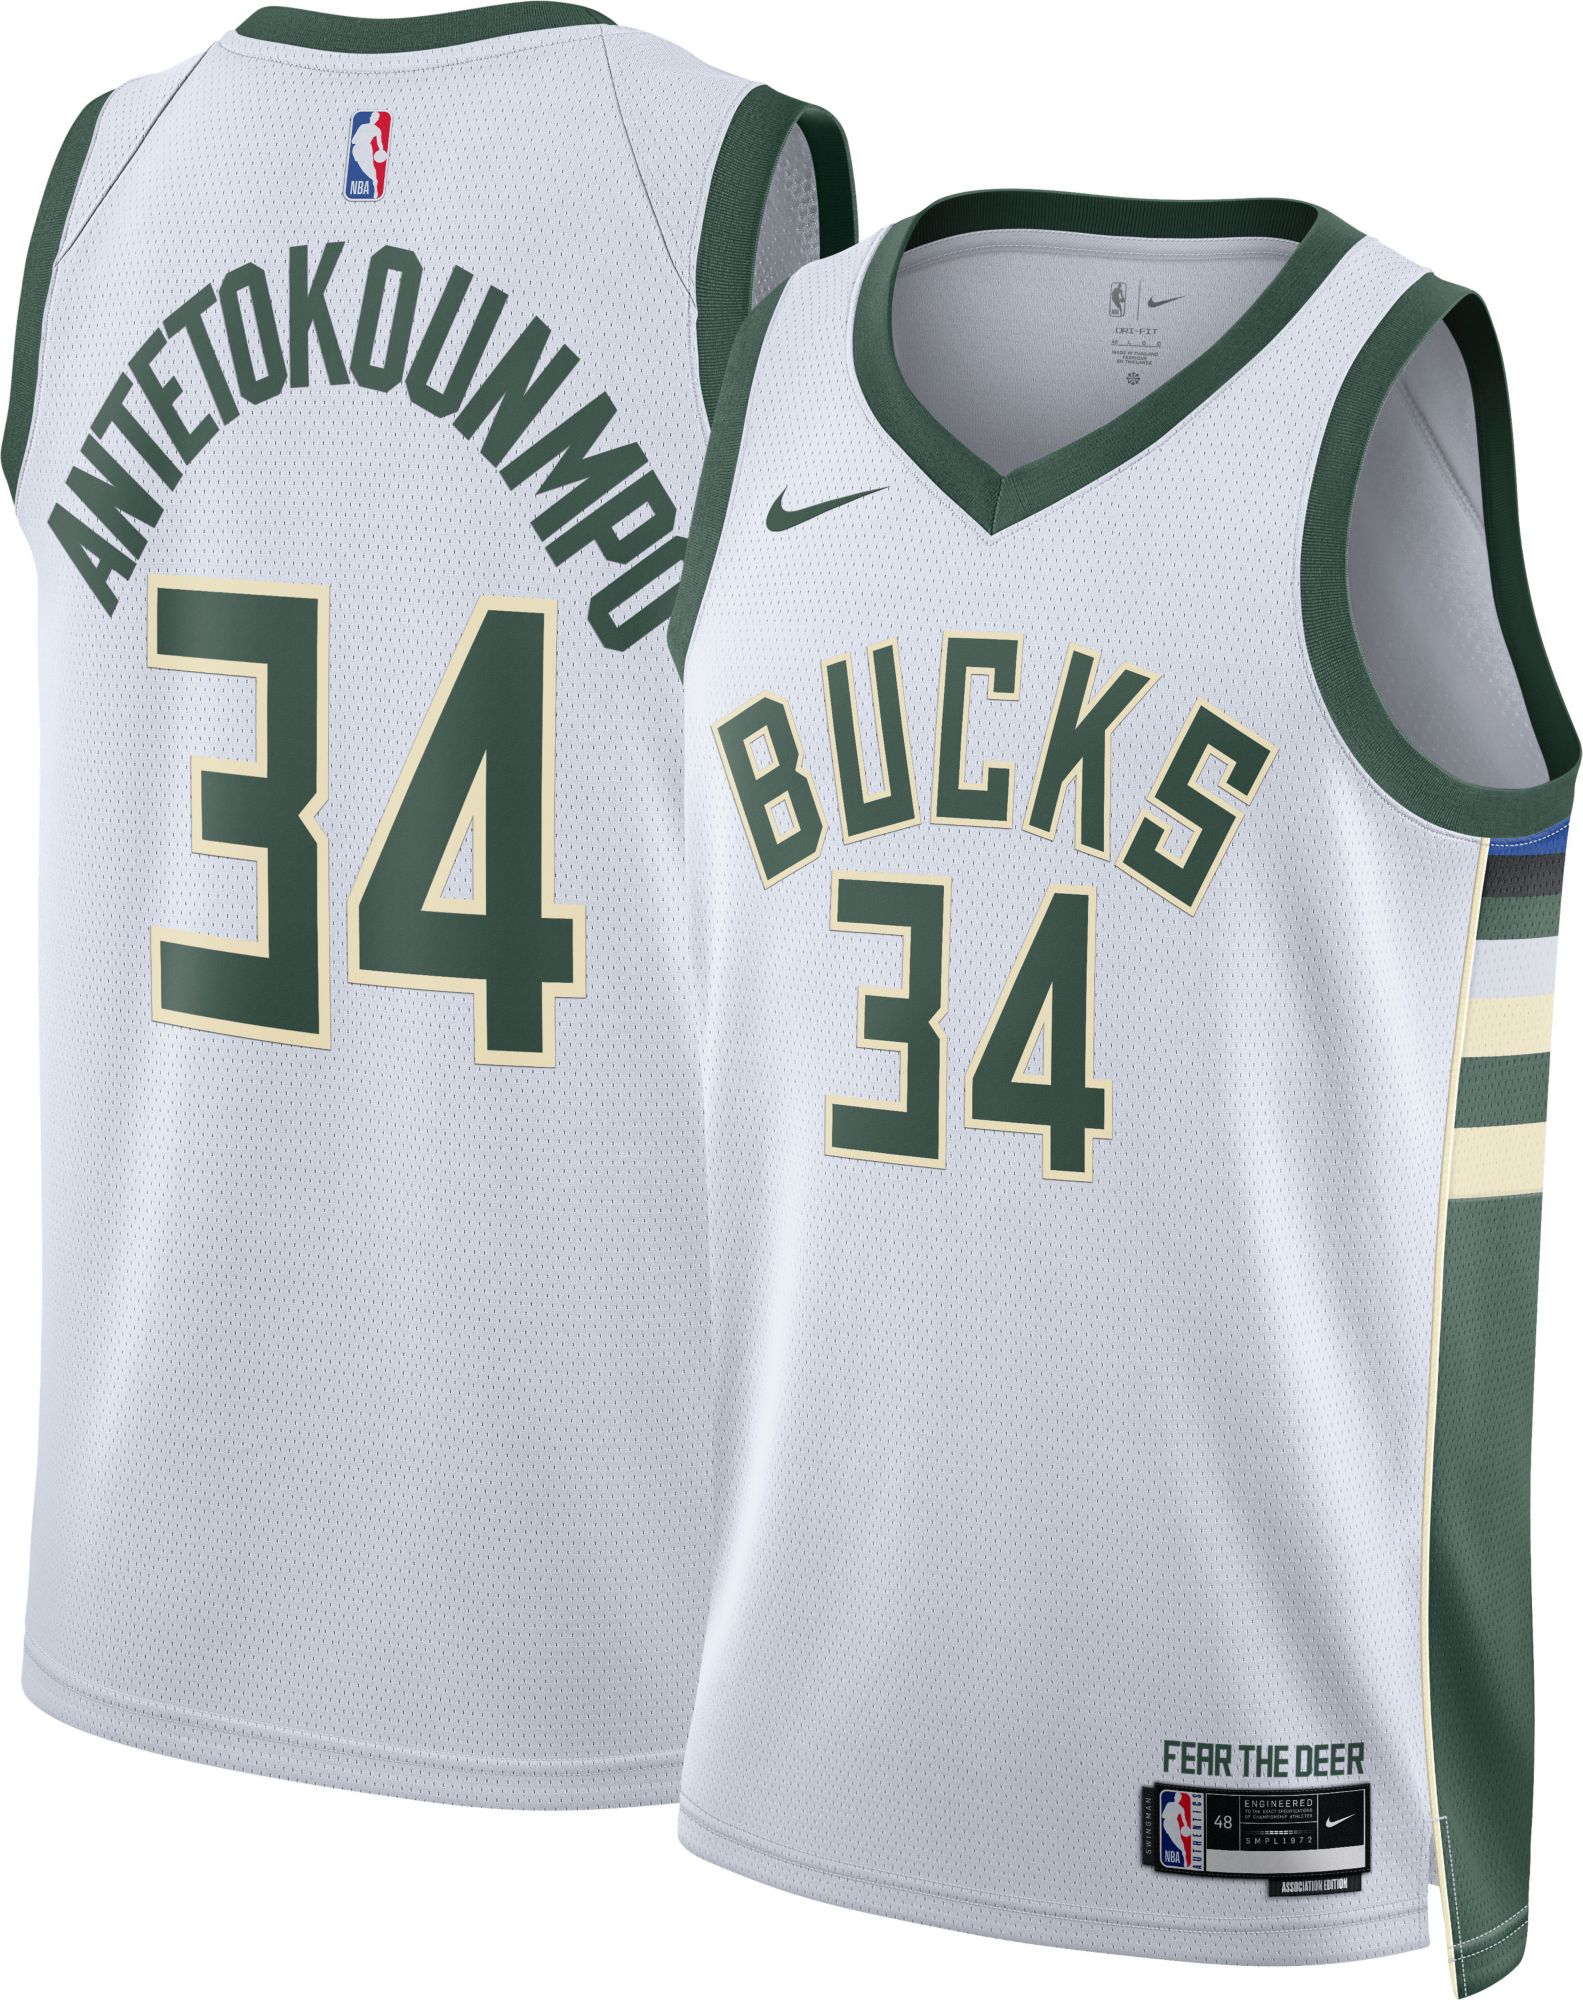 Giannis Antetokounmpo Milwaukee Bucks city jersey #nba #jersey  #thegreekfreak 